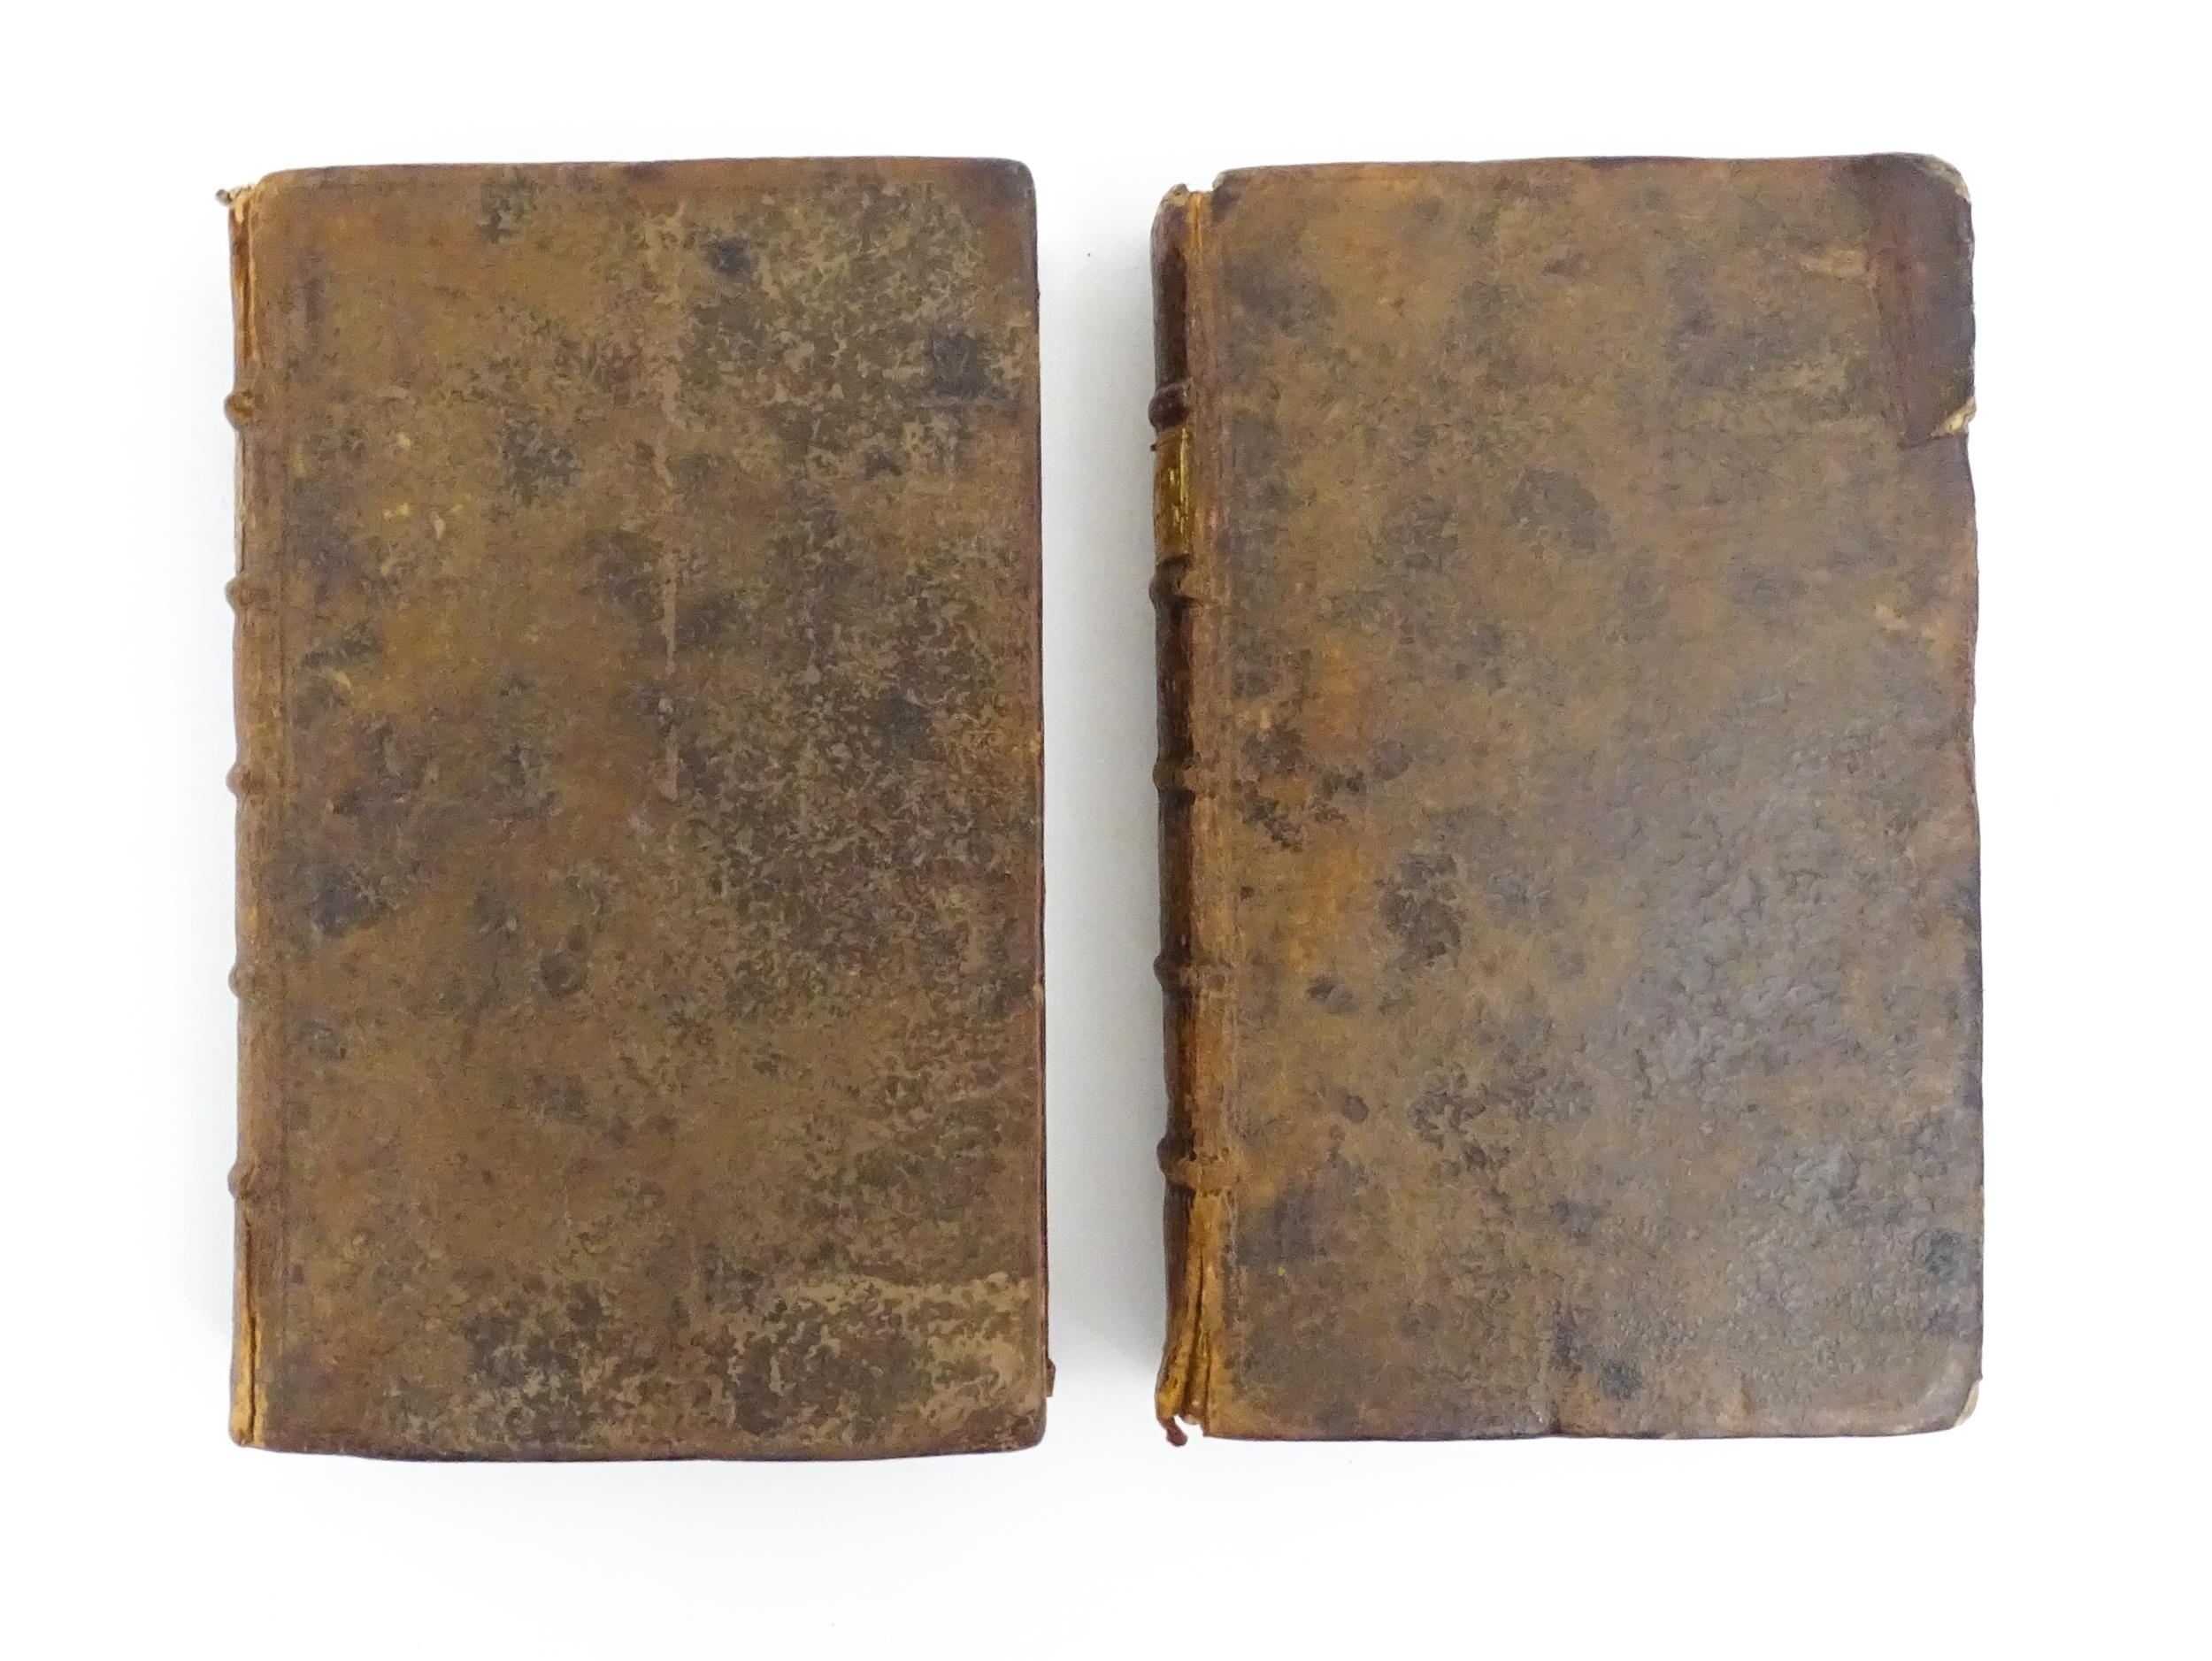 Books: Memoires Historiques, Politiques, Critiques et Litteraires, in two volumes, by Amelot de la - Image 5 of 7